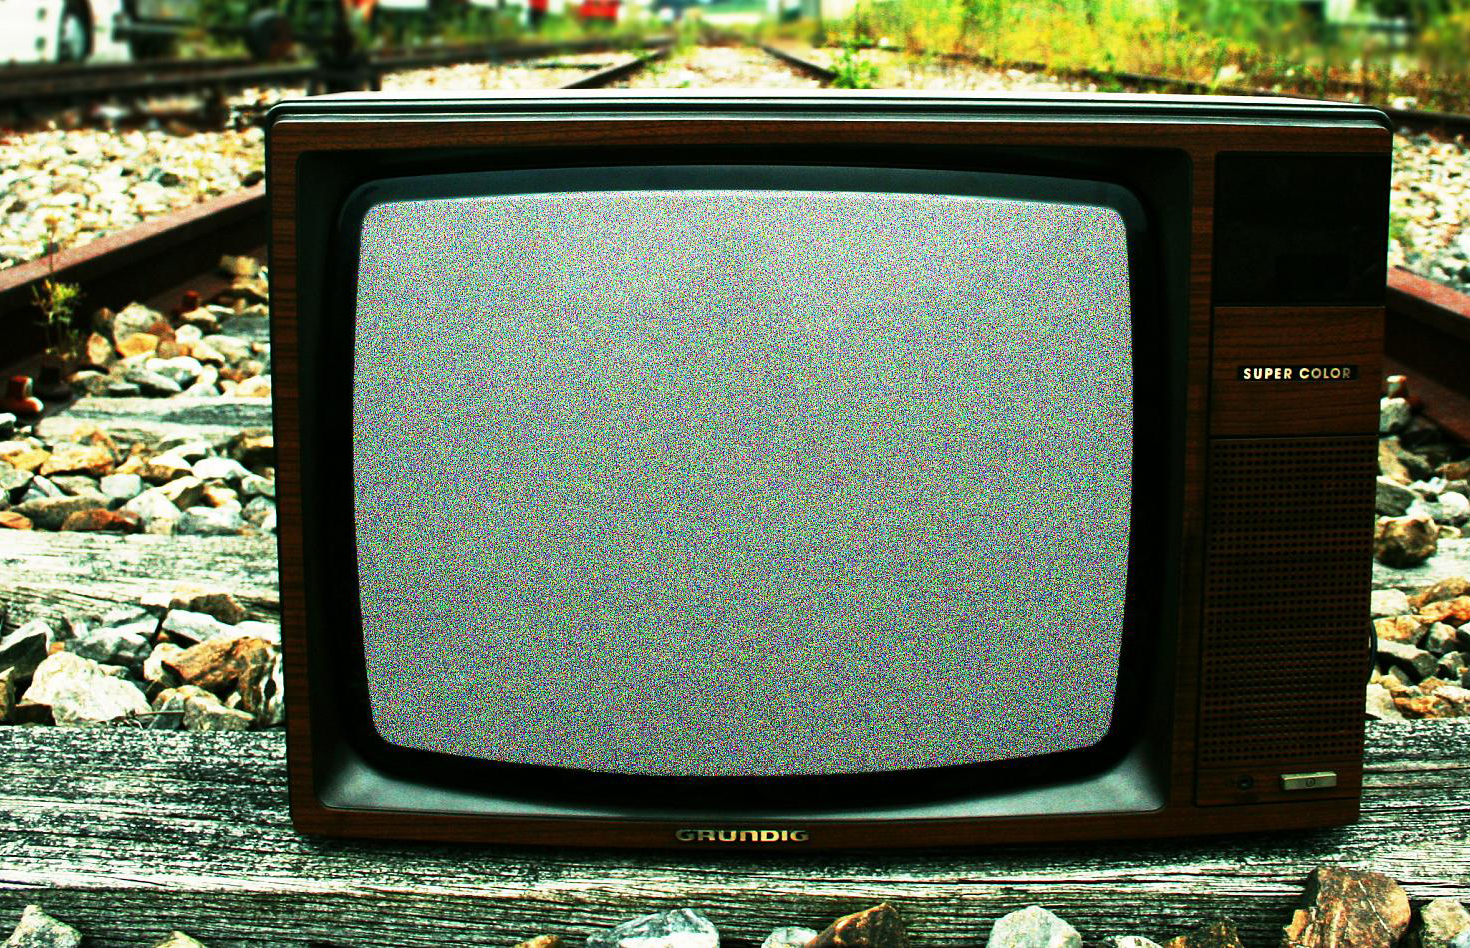 Взять в кредит телевизор. Телевизор коробка. Старый и новый телевизор. Телевизор на помойке. Двигает телевизор.